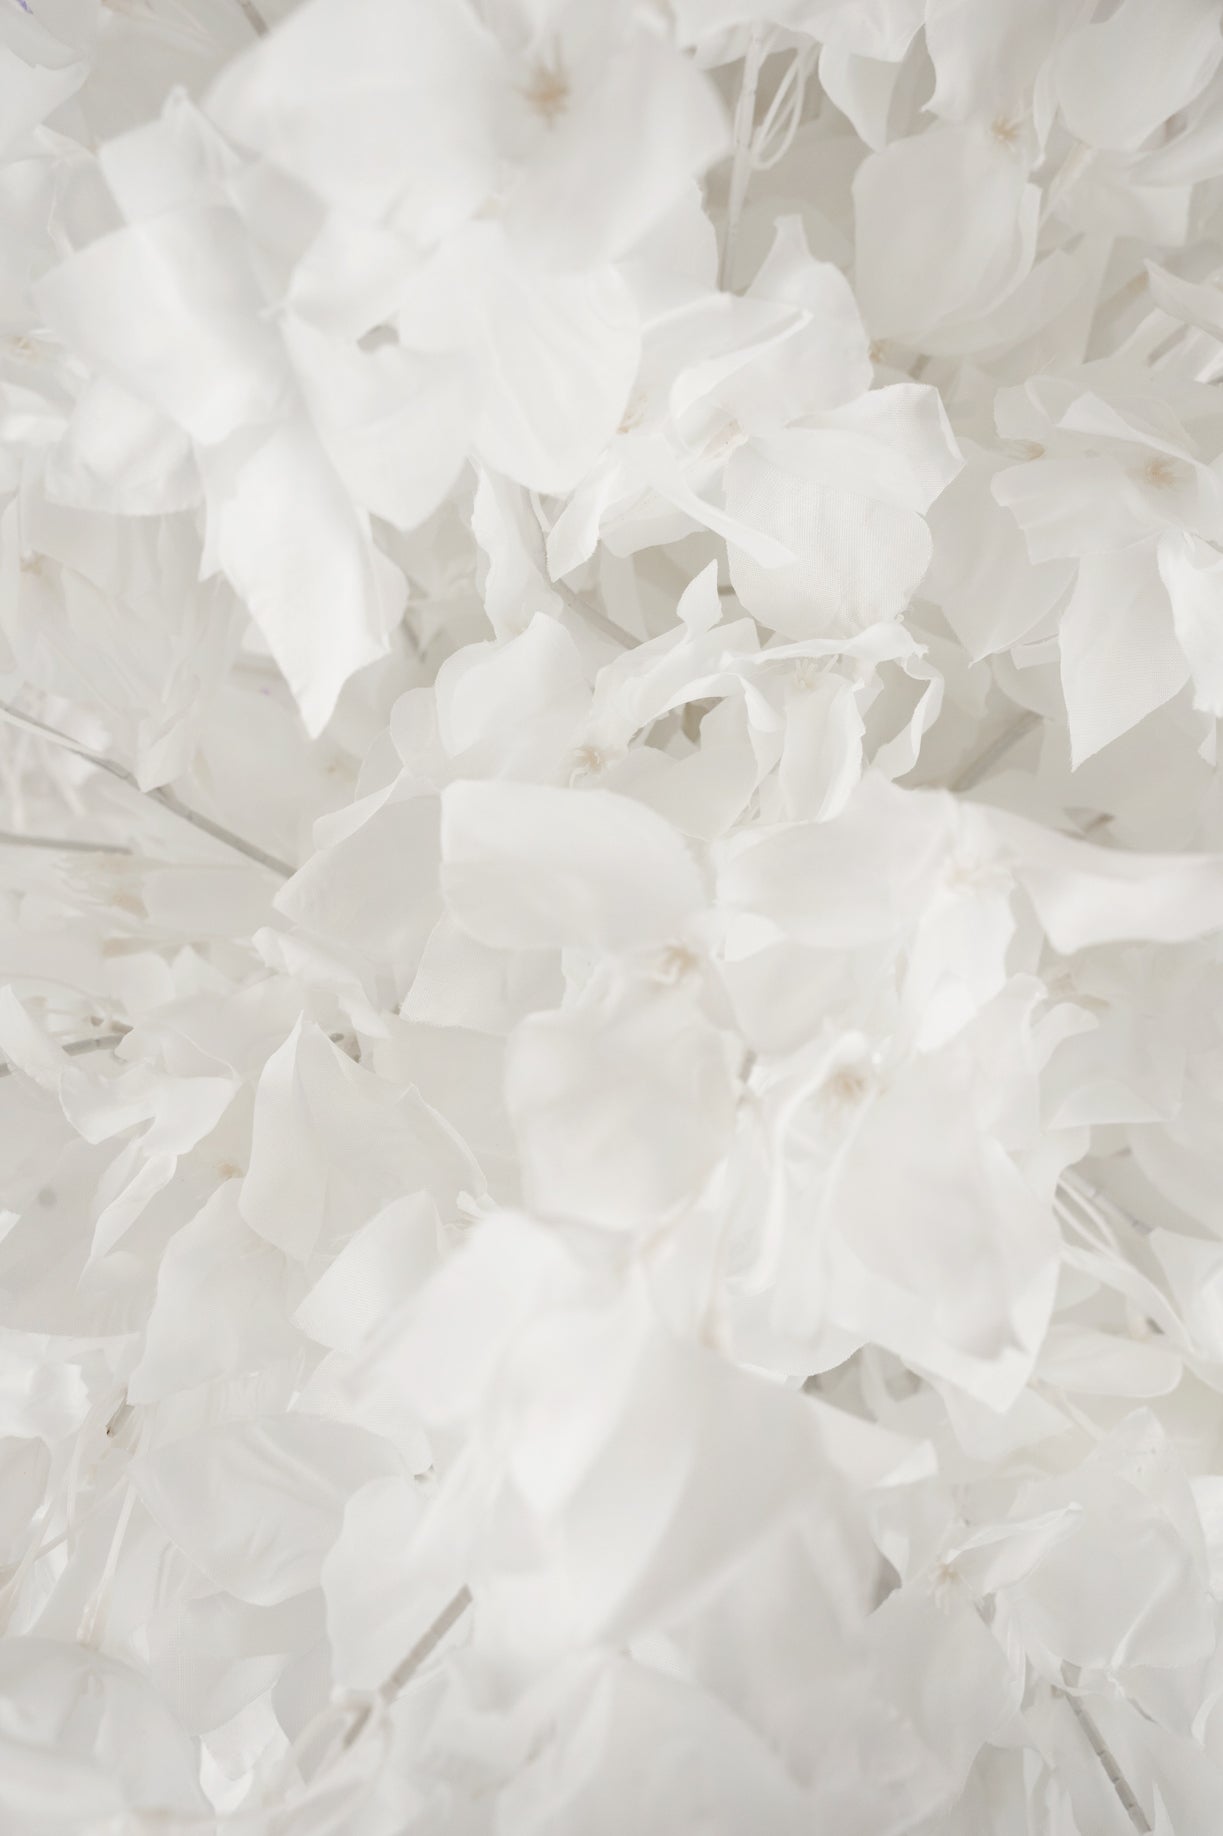 Crenguta cu flori artificiale albe de bougainvilea H86 cm